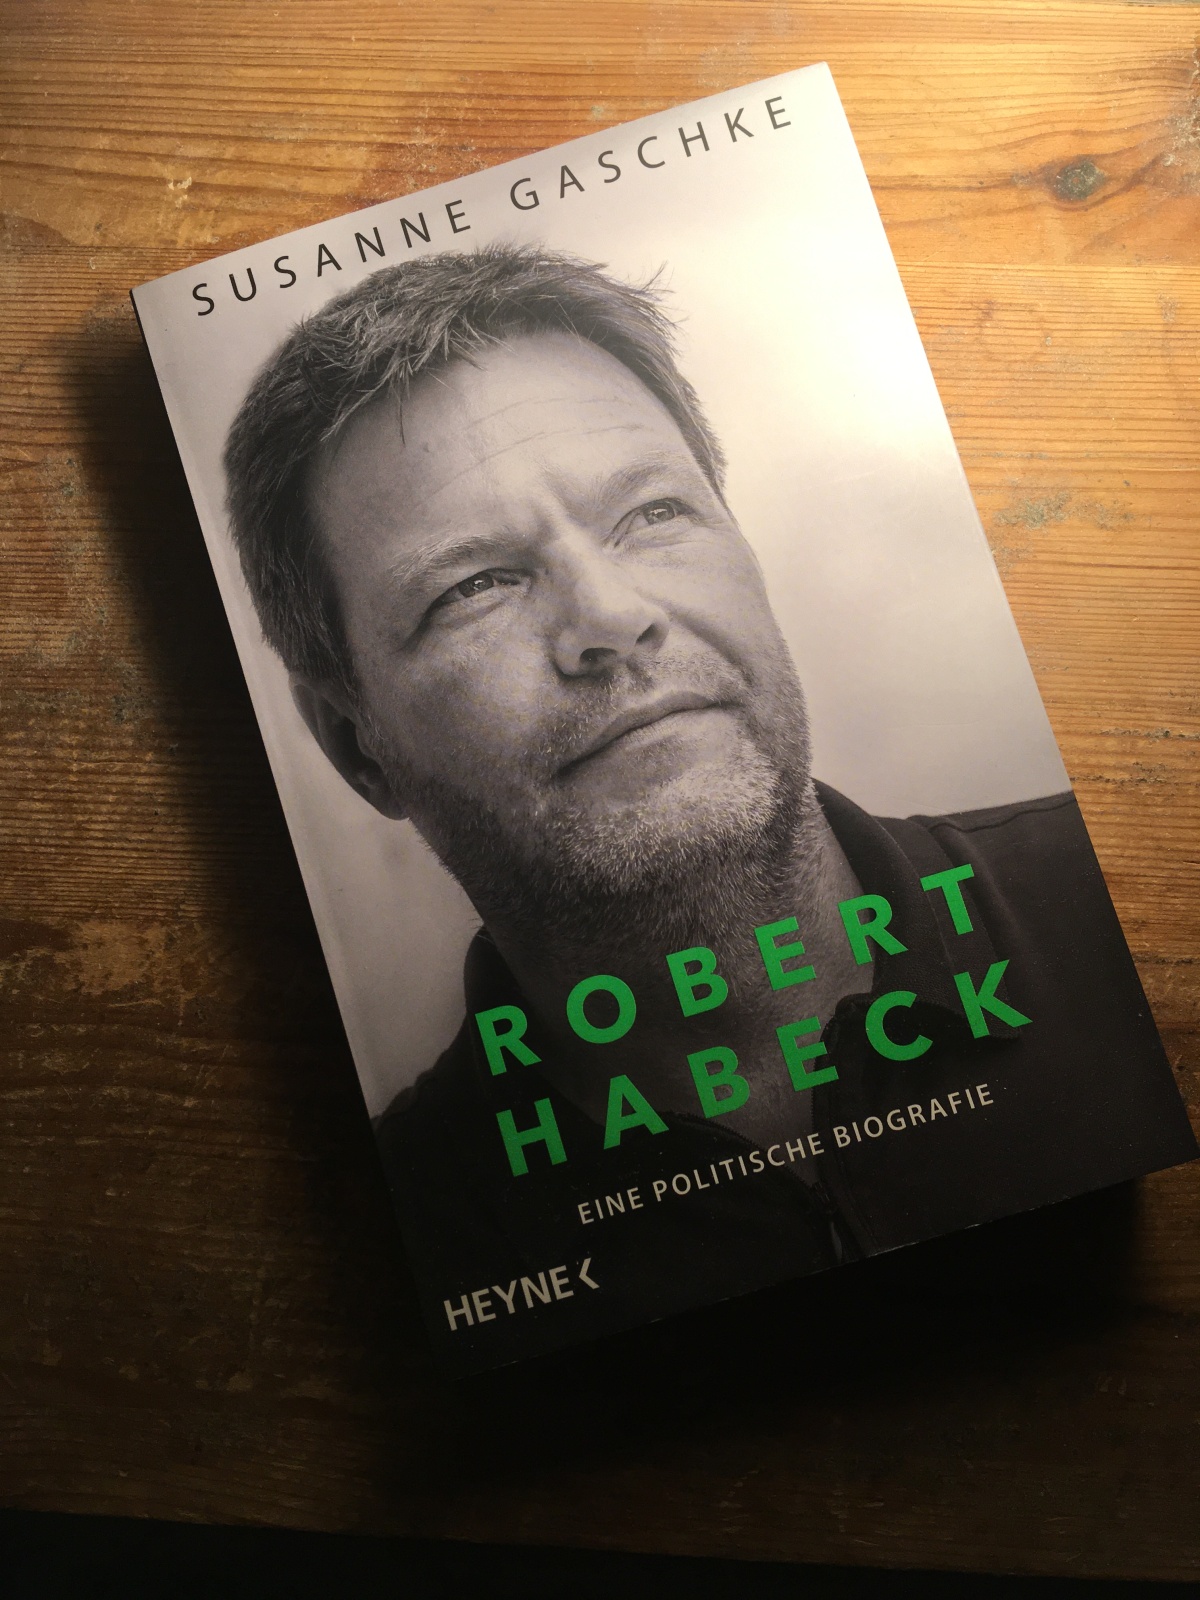 Buchbesprechung: Dr. Susanne Gaschke: „Robert Habeck. Eine politische Biografie“